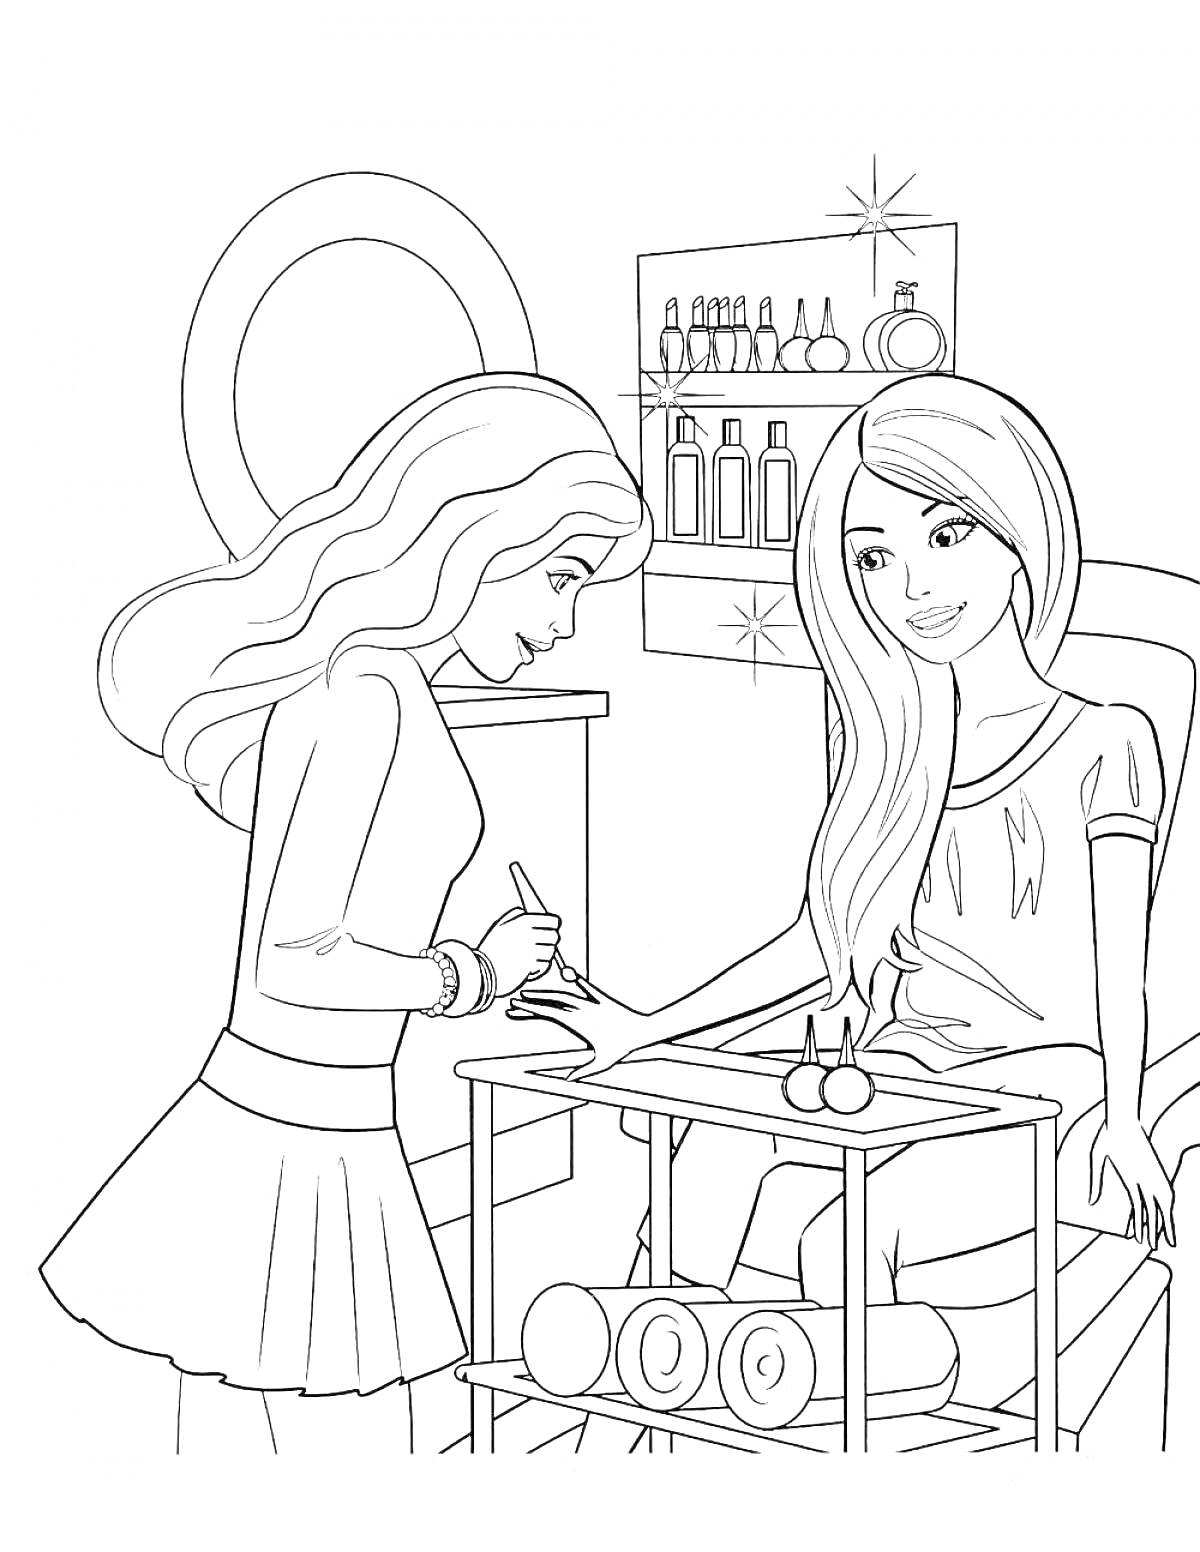 Раскраска Барби в салоне красоты - две девушки, маникюр, полки с косметикой, столик с маникюрными принадлежностями